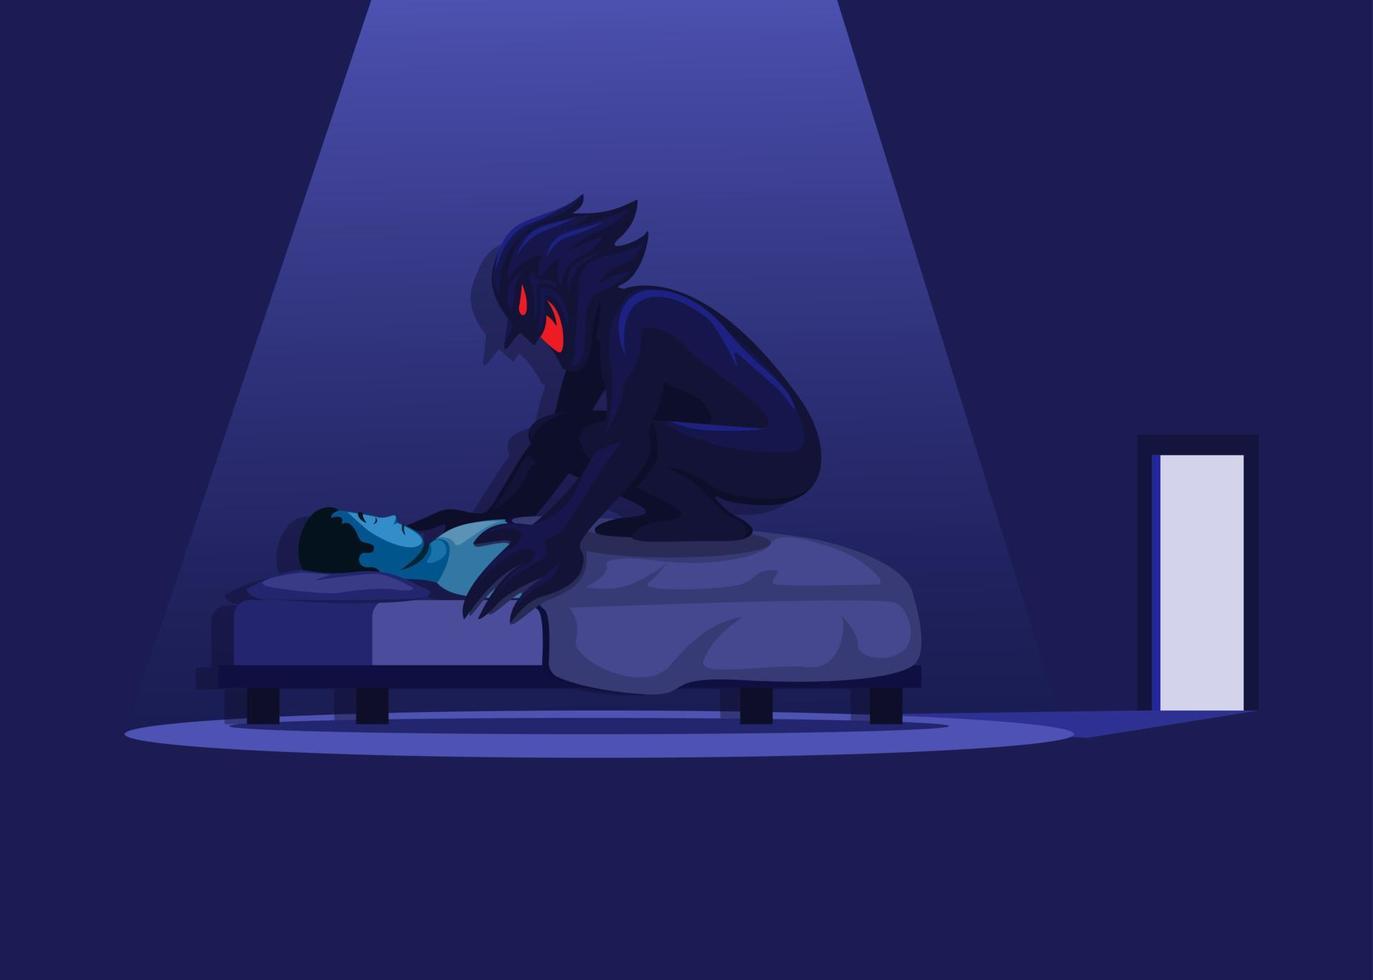 slaapverlamming met demon in bed. nachtmerrie horror scène illustratie vector